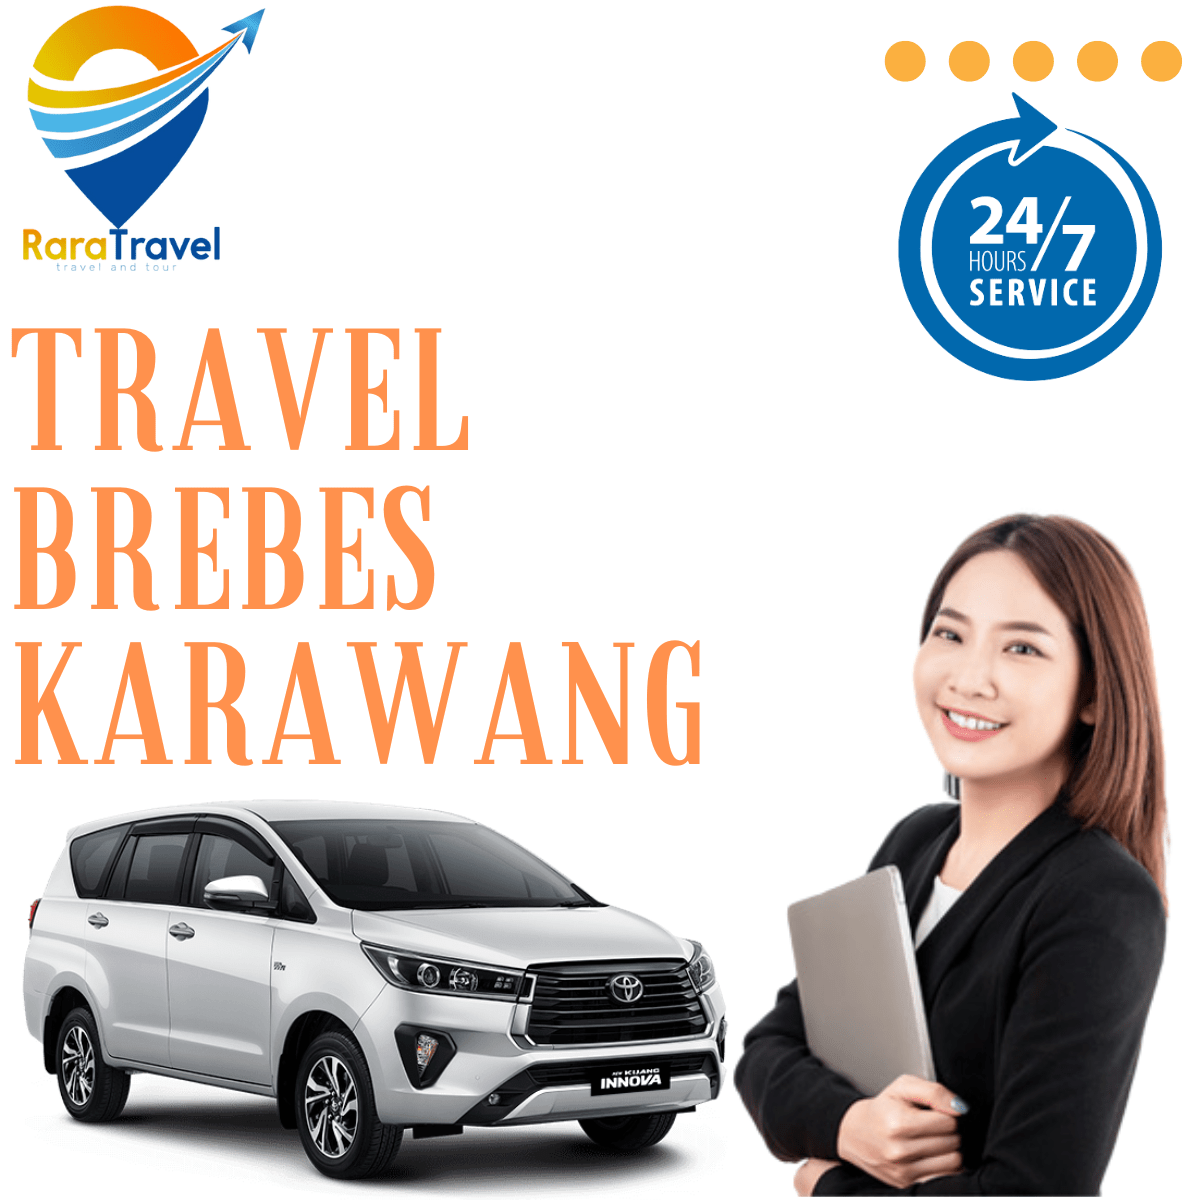 Travel Brebes Karawang Harga Tiket Murah - RARATRAVEL.ID